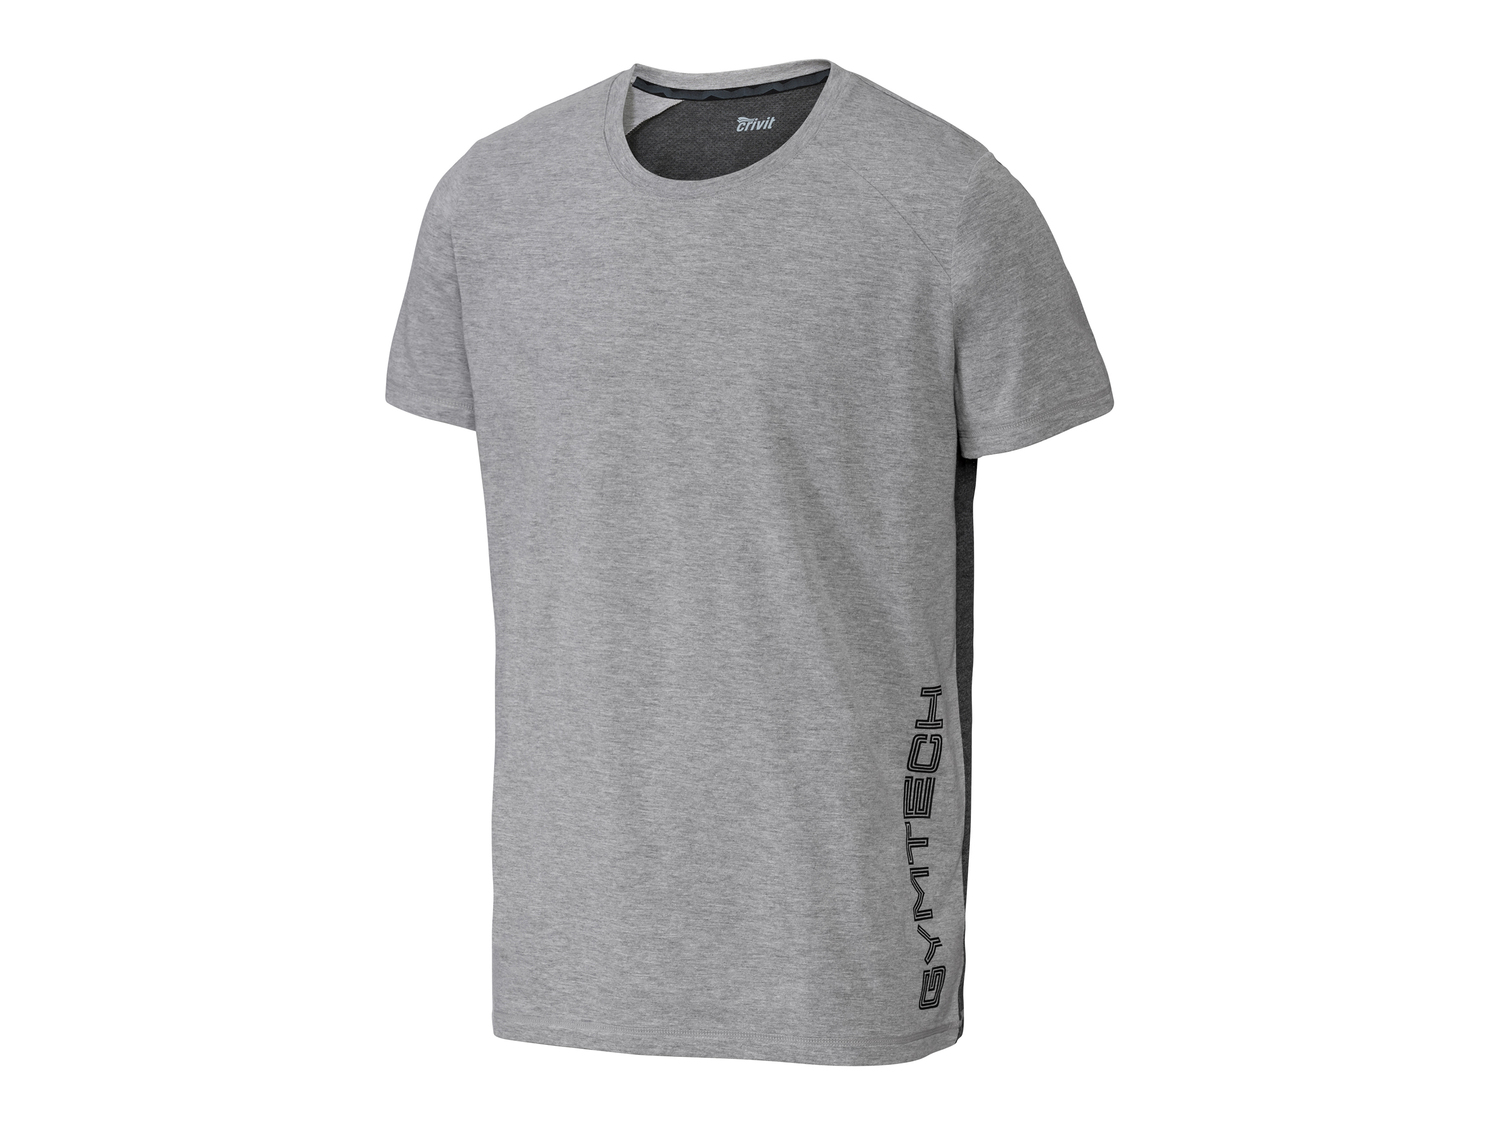 T-shirt sportiva da uomo Crivit, prezzo 4.99 € 
Misure: S-XL
Taglie disponibili

Caratteristiche

- ...